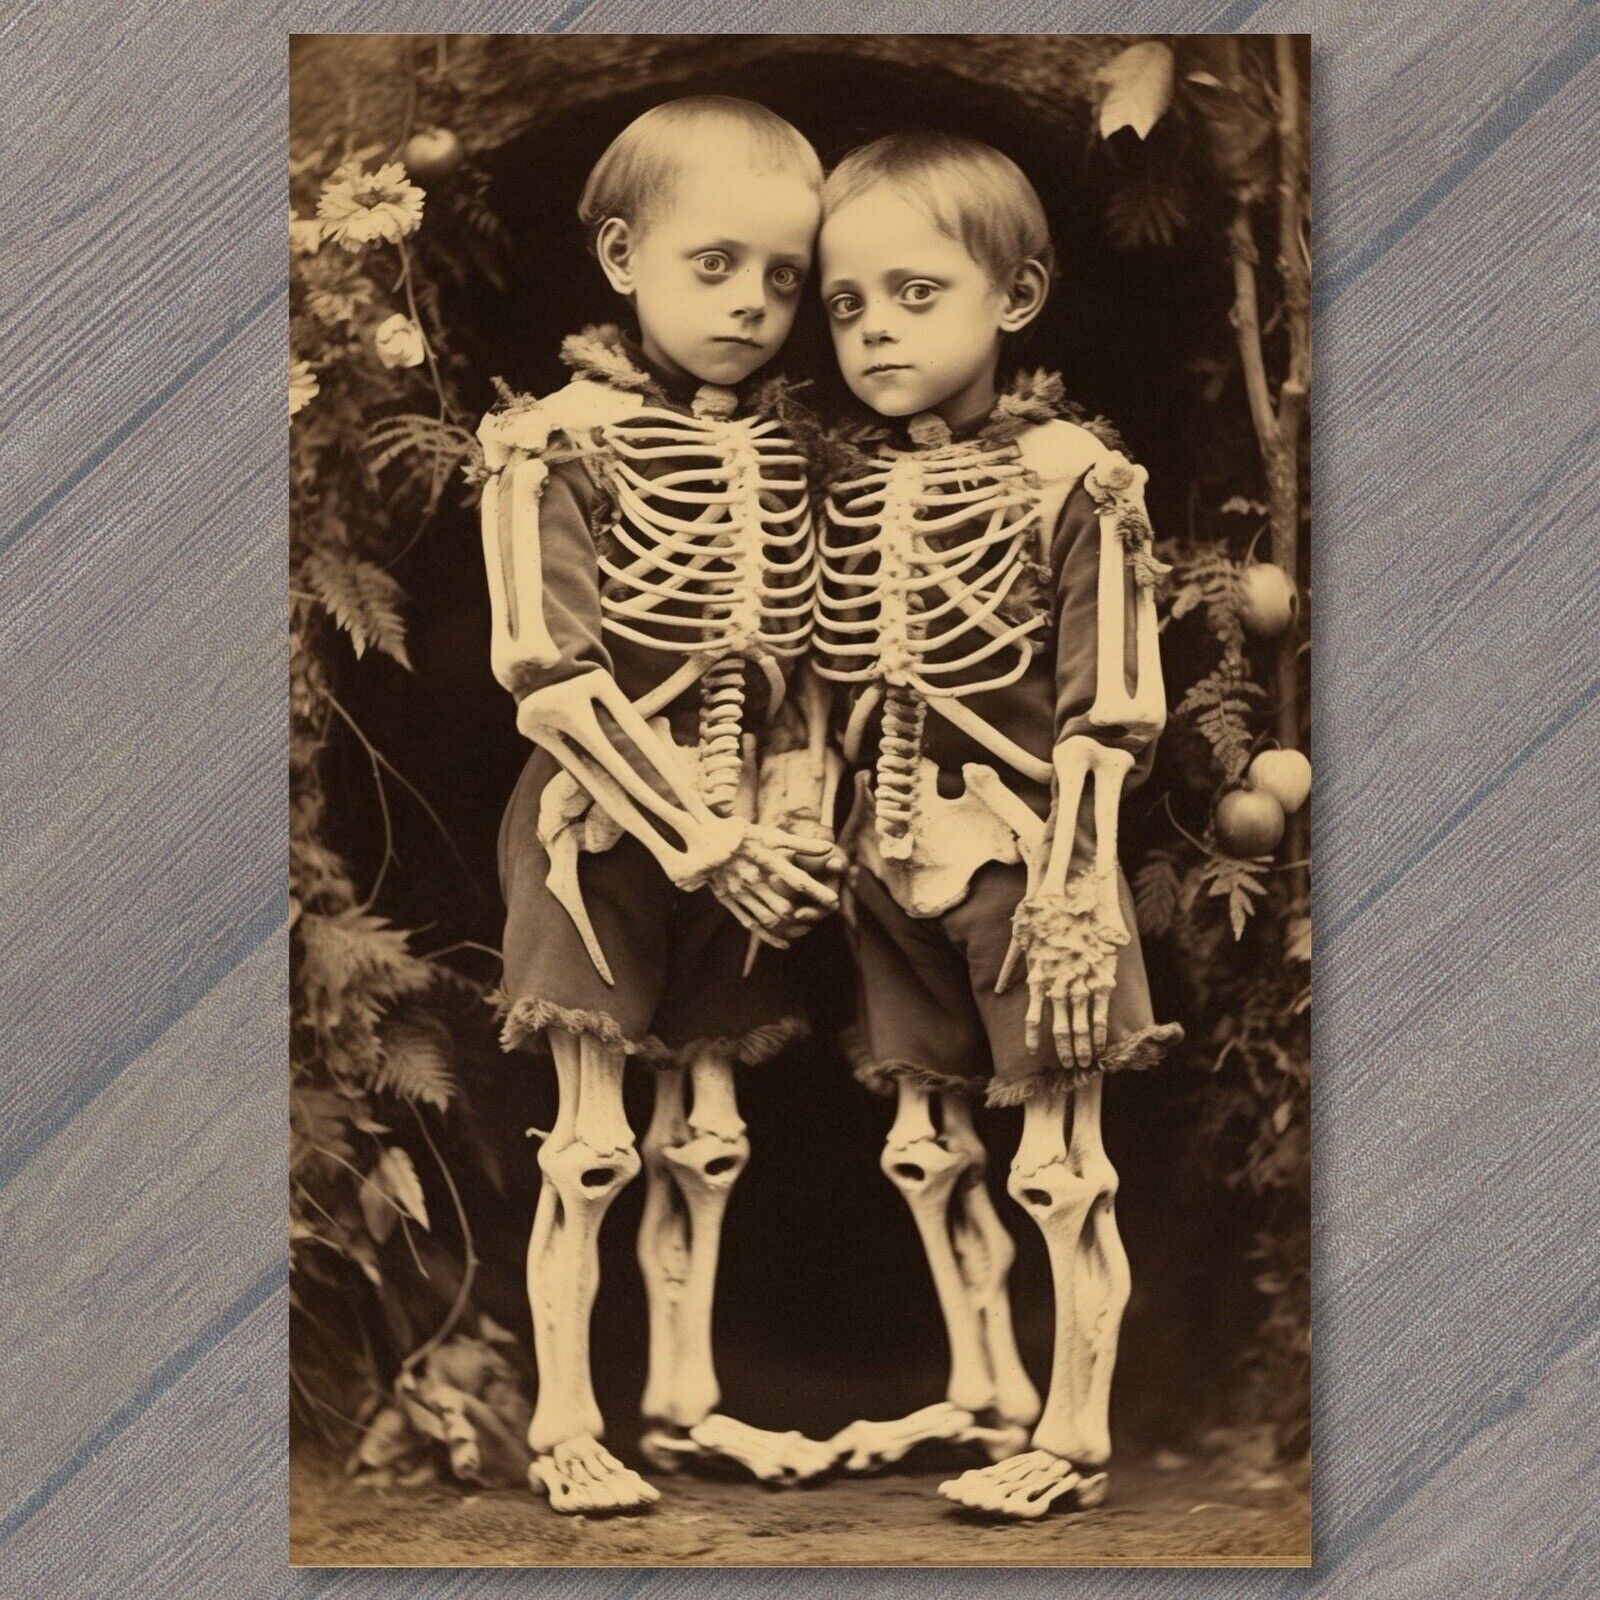 POSTCARD Creepy Sisters as Skeletons An Unusual Halloween Weird 